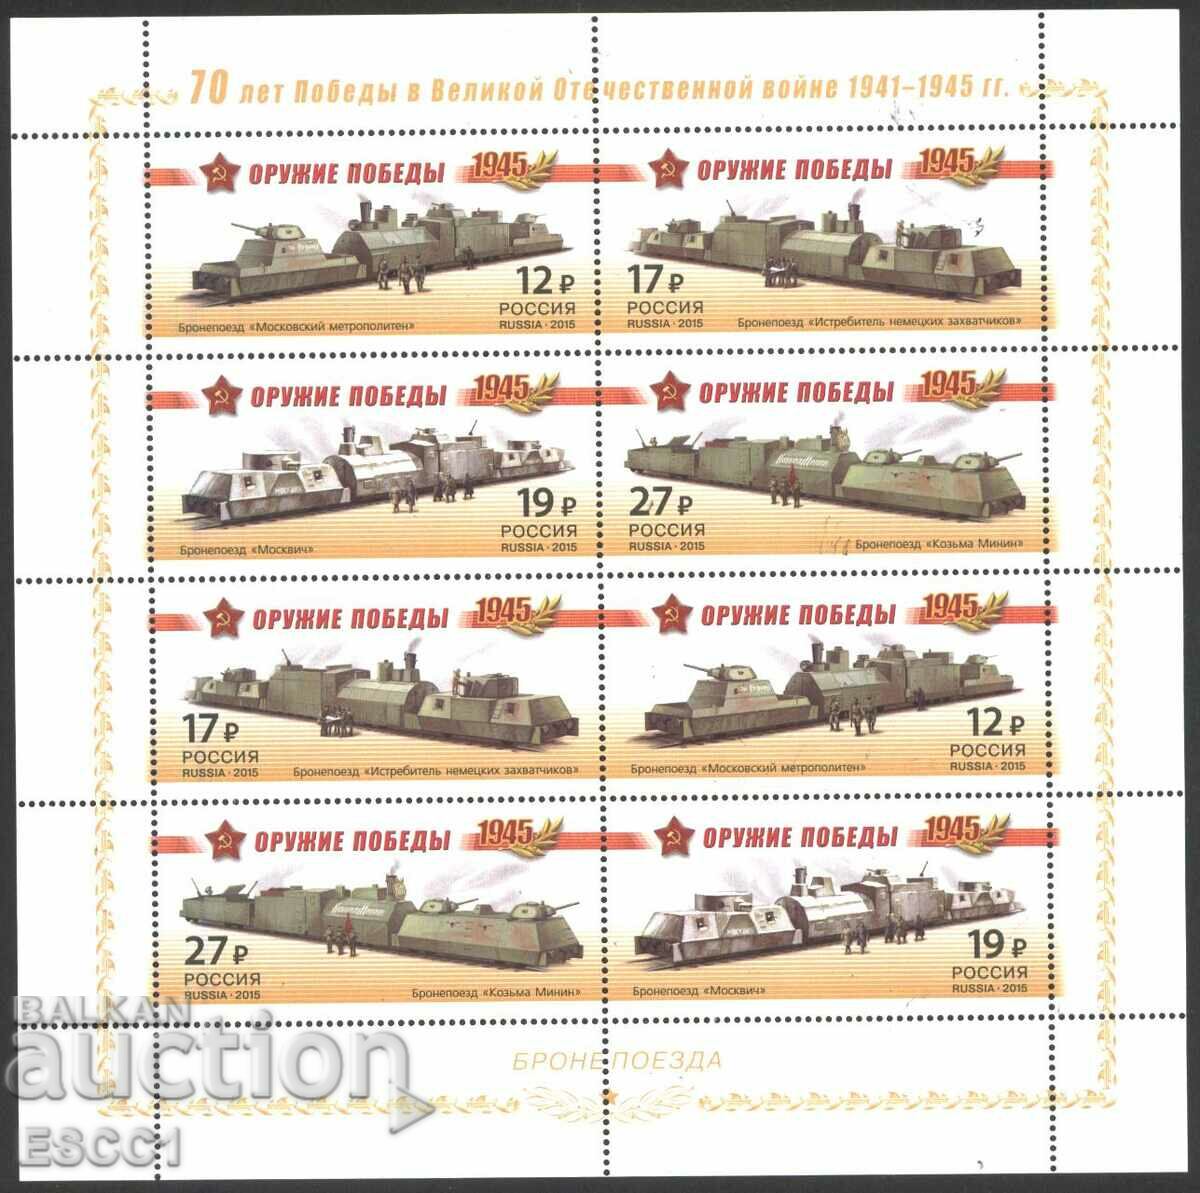 Καθαρά γραμματόσημα μικρό φύλλο Όπλα Νίκης 2015 Ρωσία